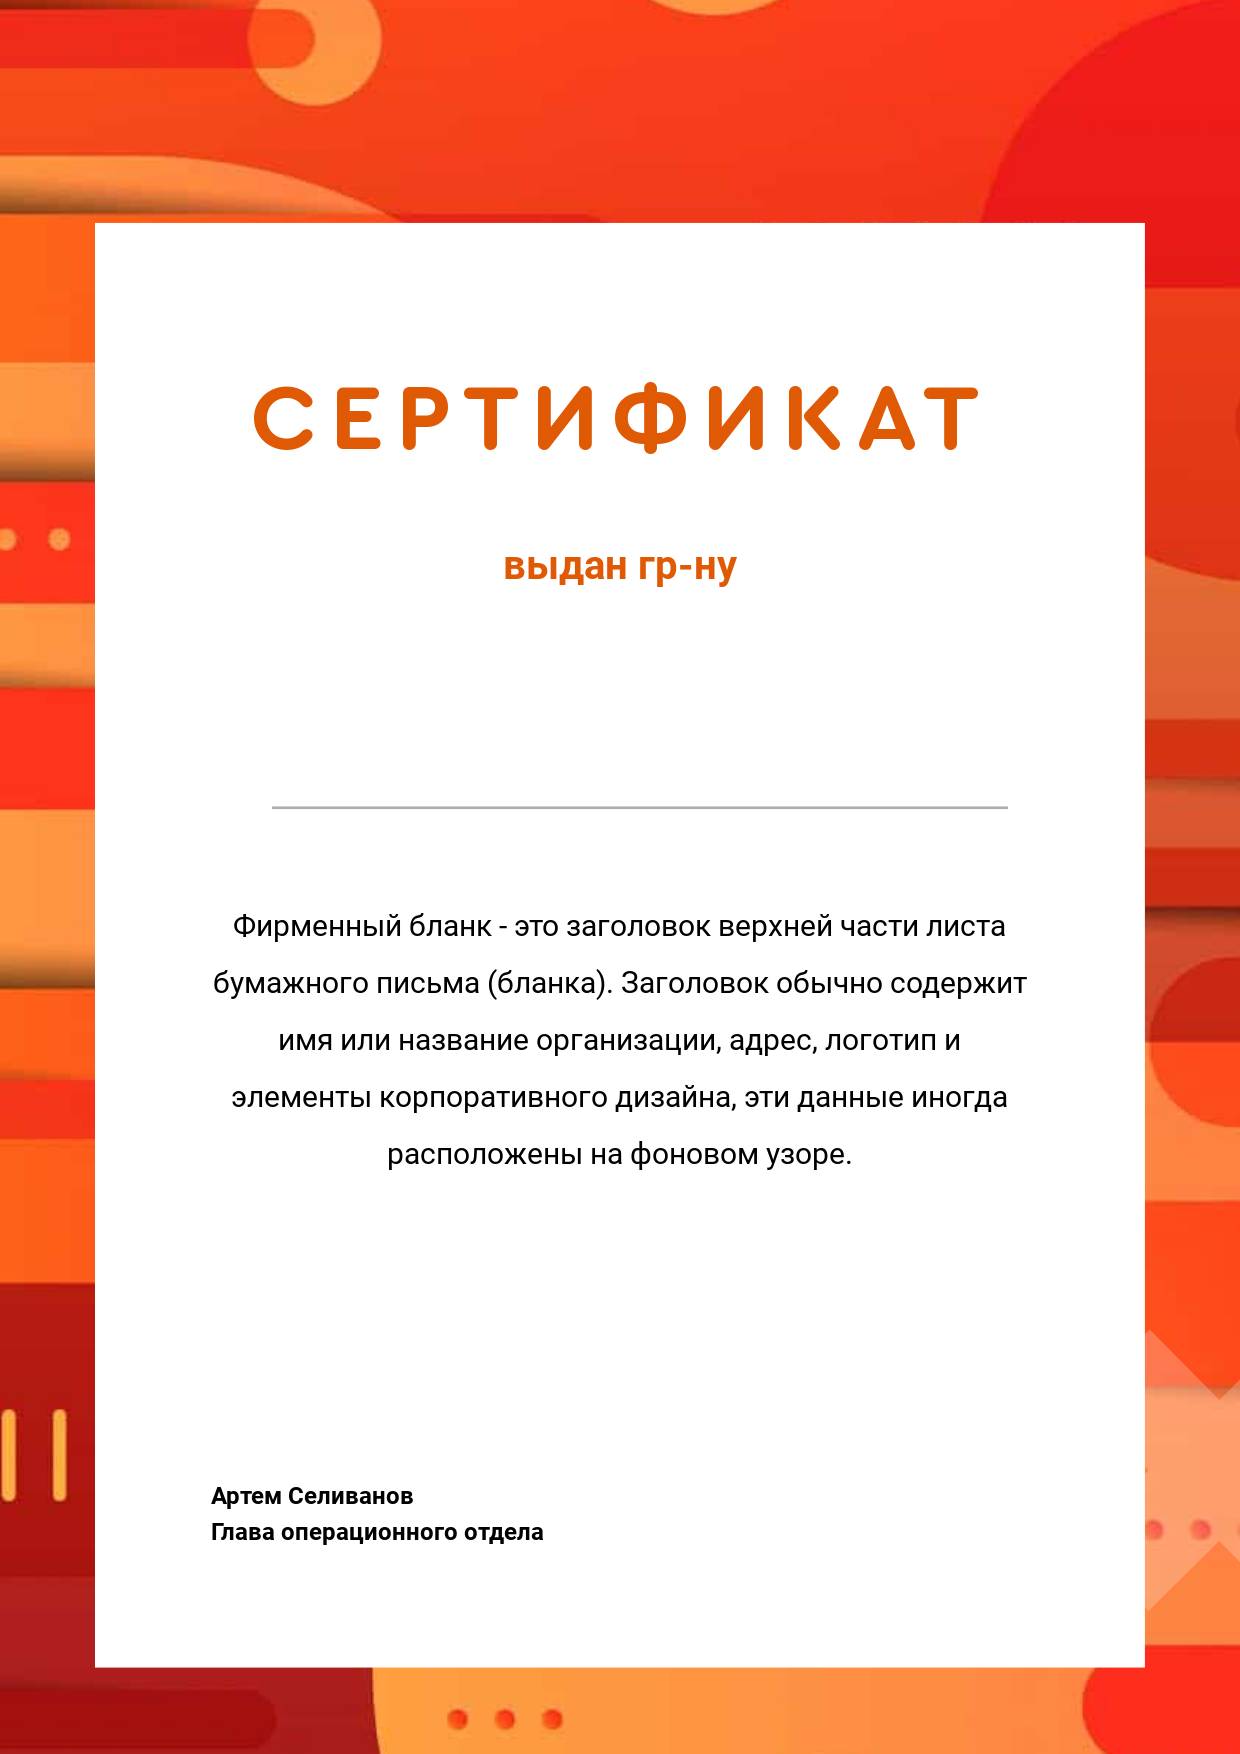 Темно-оранжевый сертификат с абстрактными фигурами и разводами на фоне и ярким оранжевым шрифтом